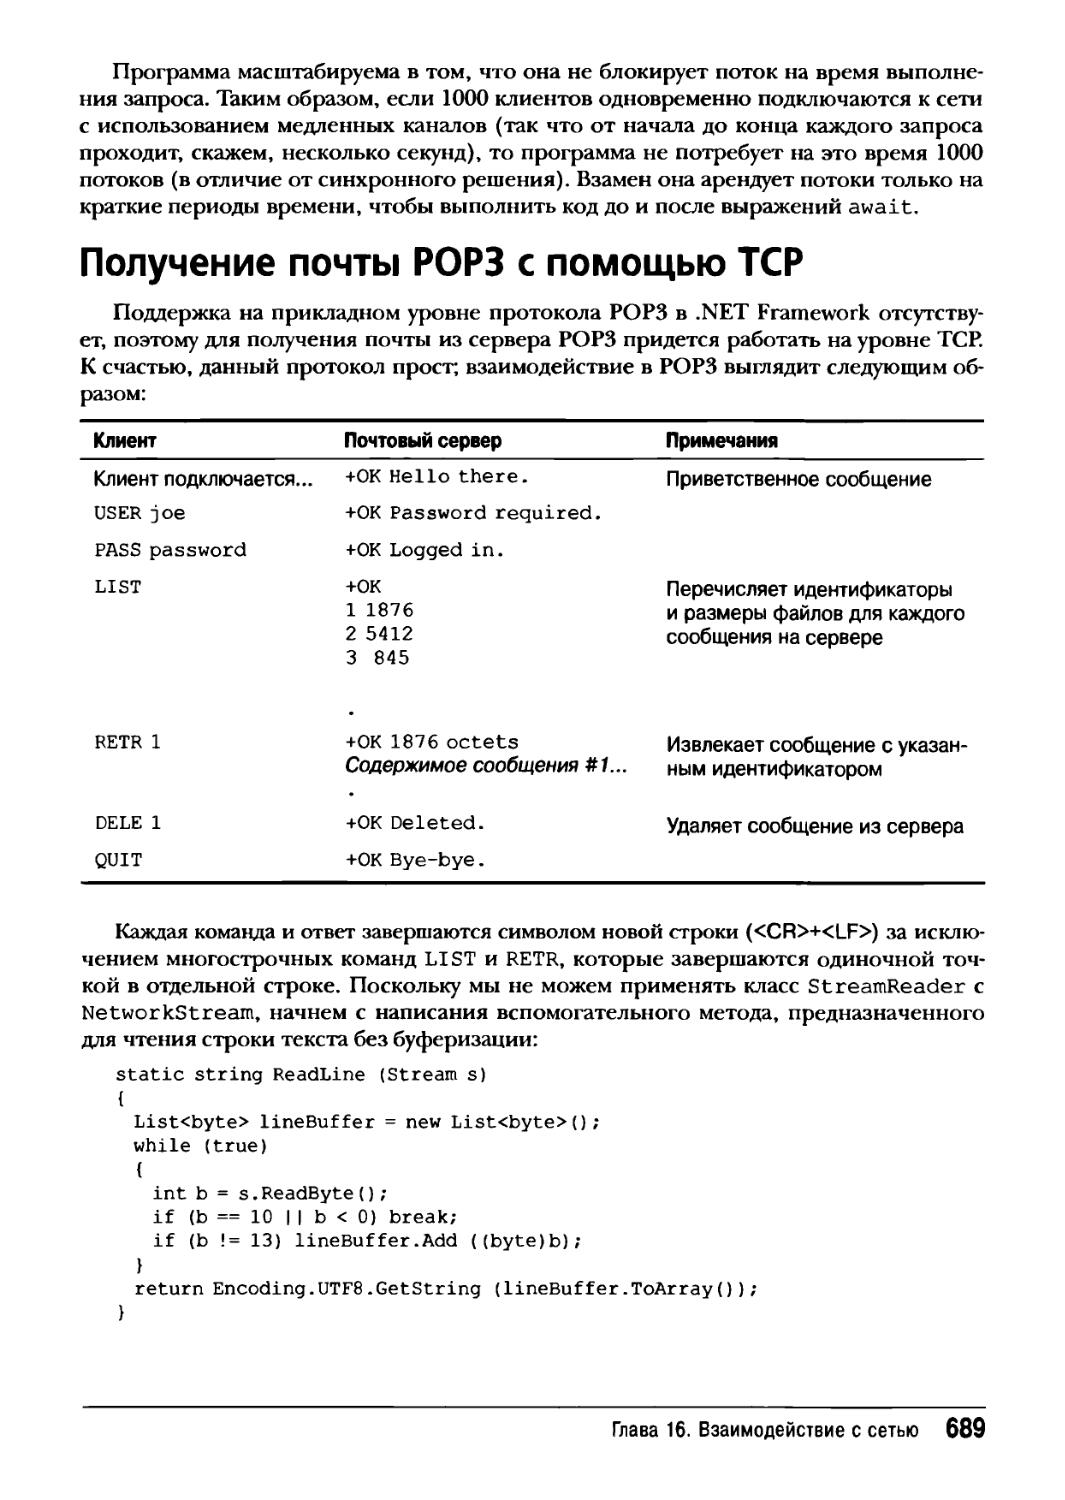 Получение почты POP3 с помощью TCP